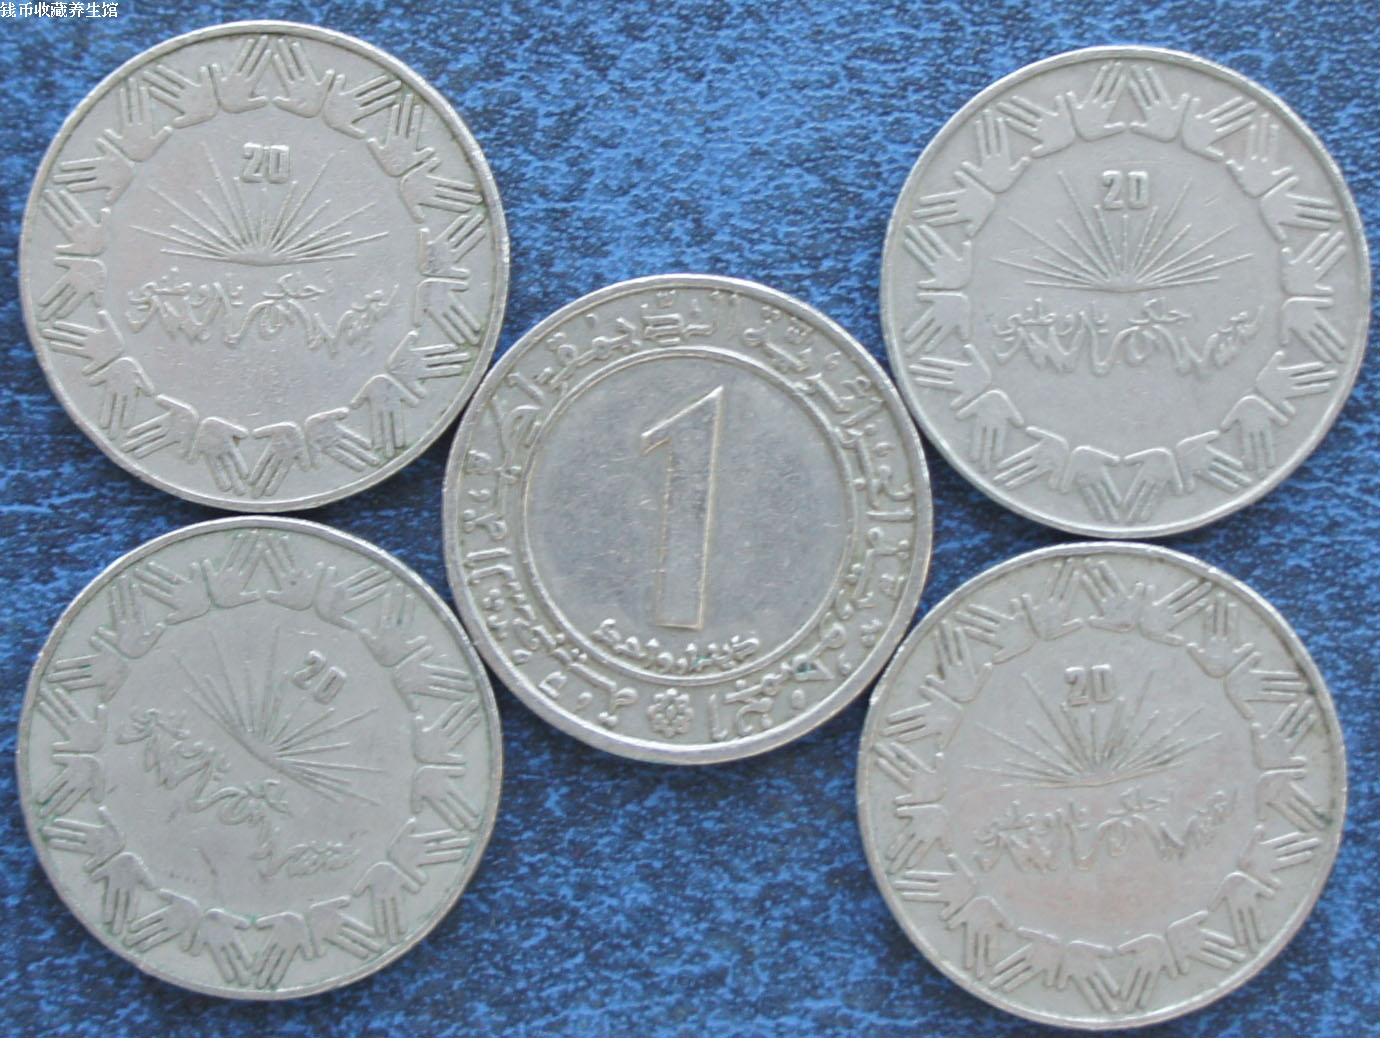 阿尔及利亚 1982年1第纳尔独立20周年纪念流通硬币一枚